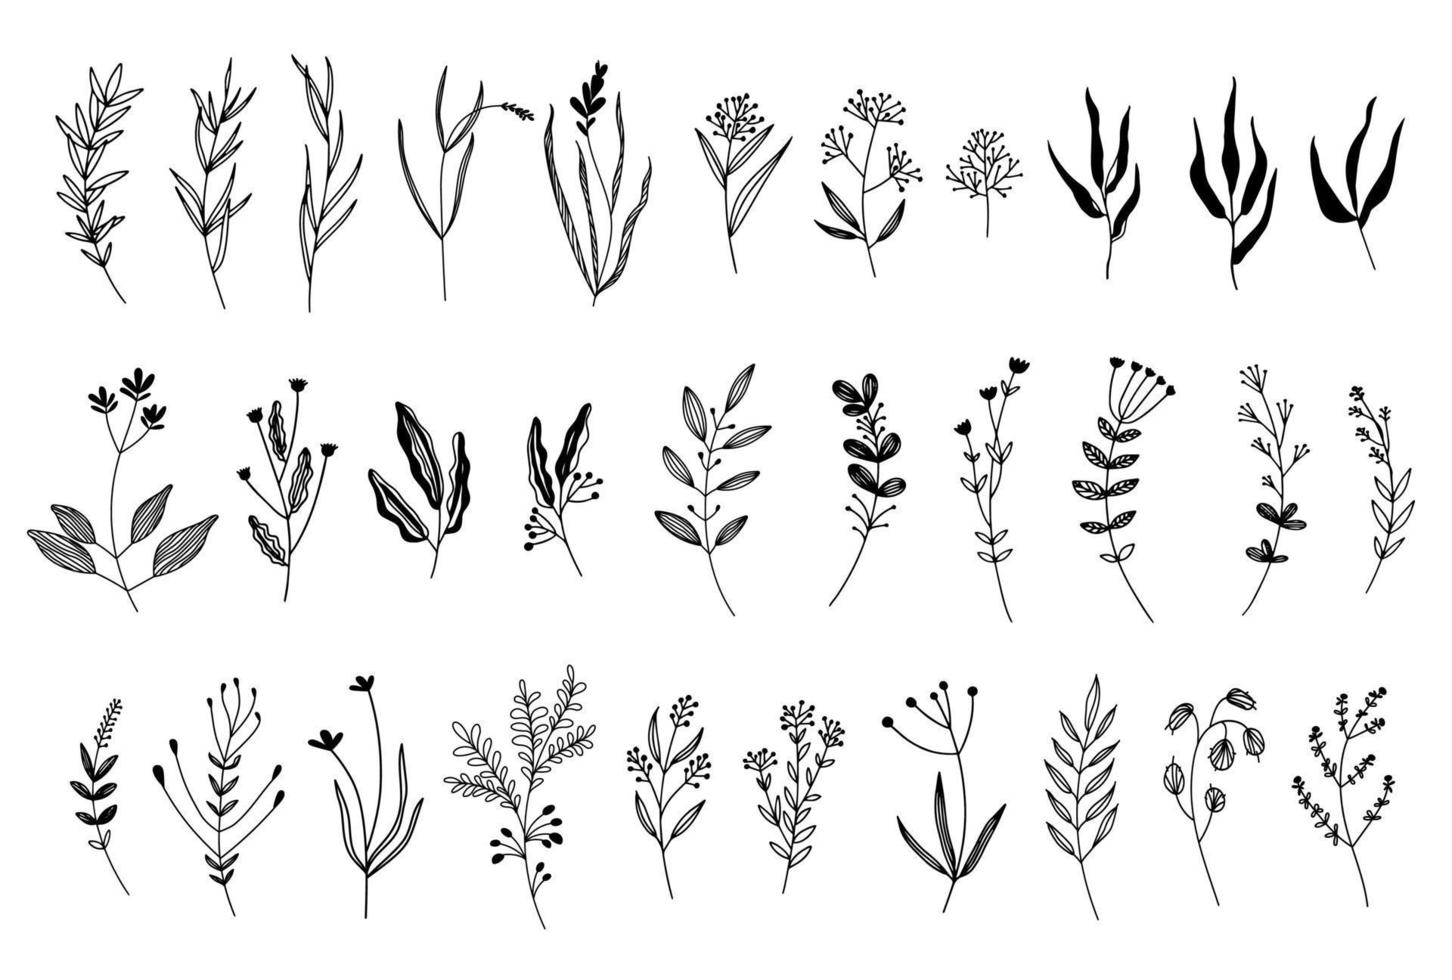 en stor uppsättning grafiska blommor, växter. 31 handritade designelement i skissstil. perfekt för att skapa tryck, mönster, tatueringar, etc. vektor